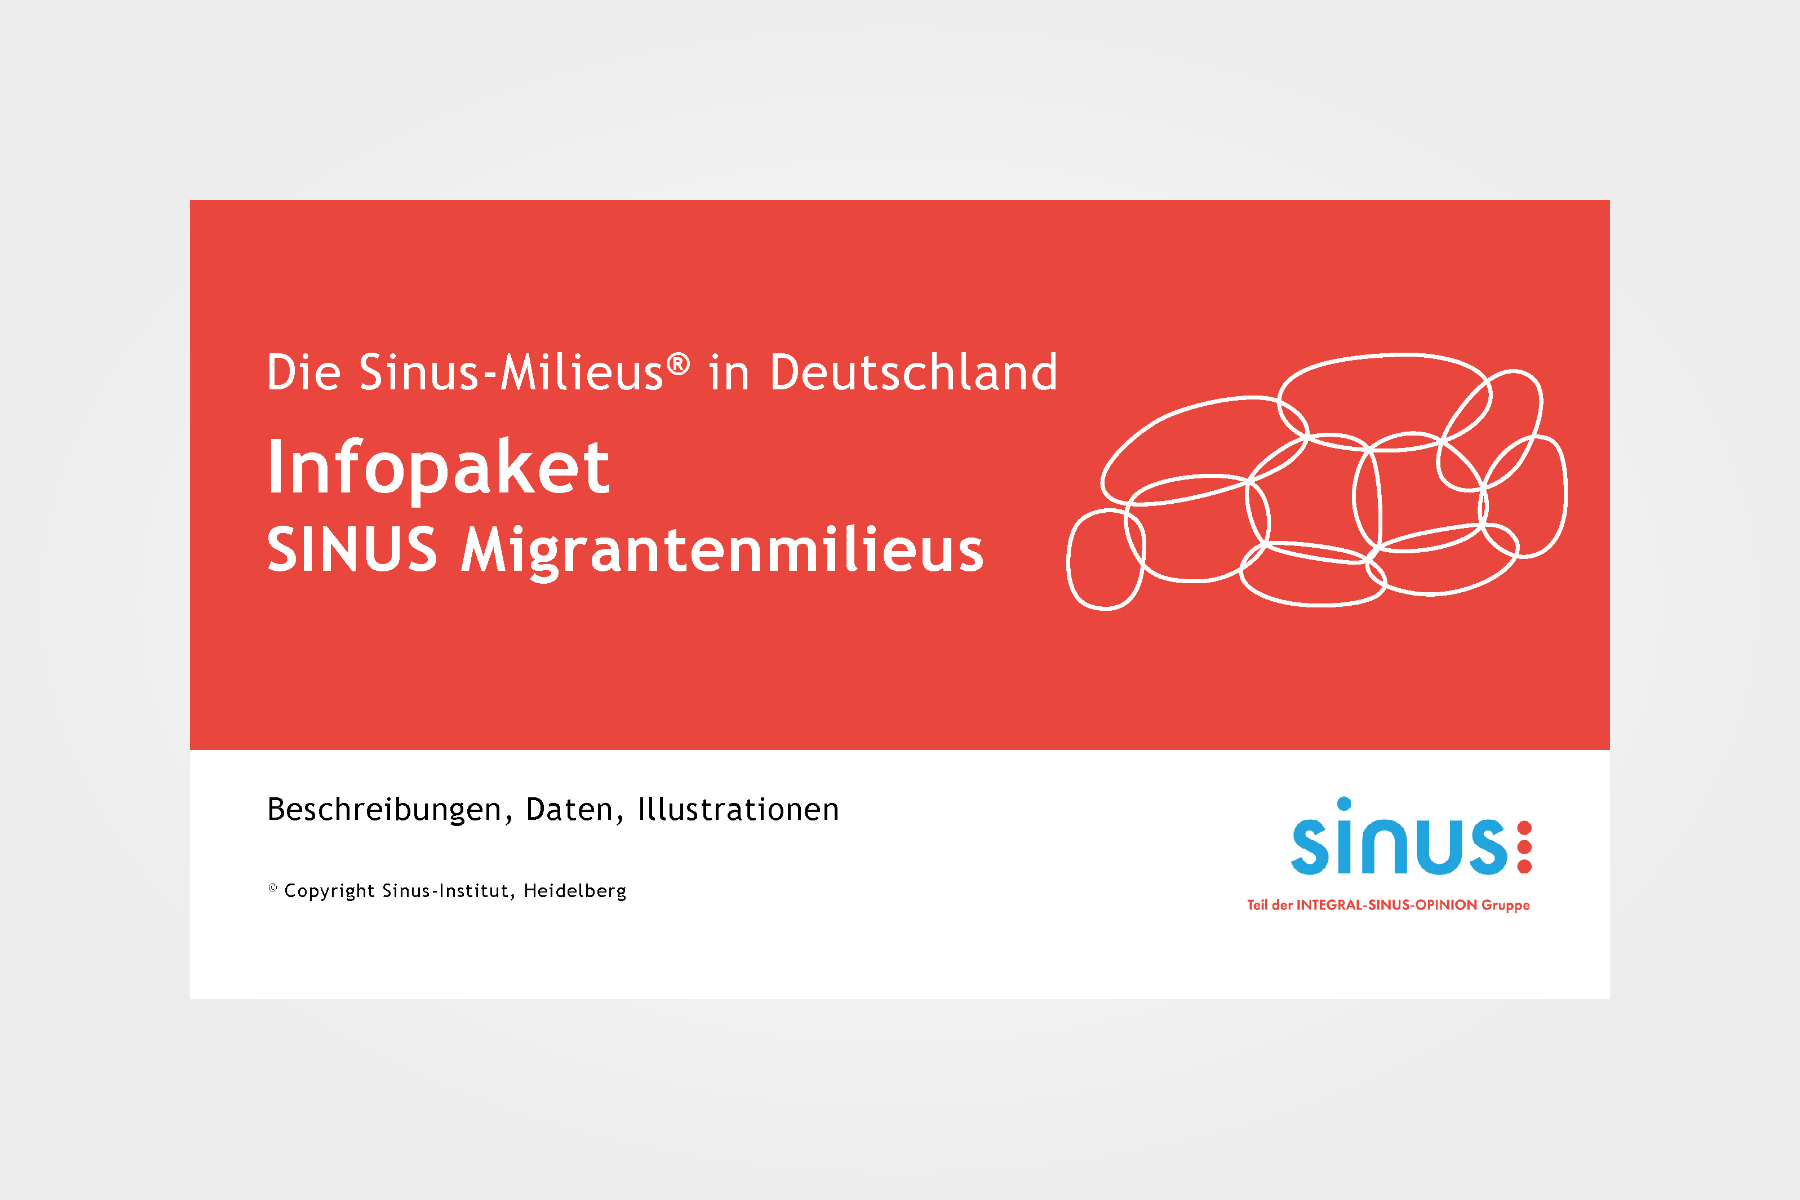 Infopaket „Sinus-Migrantenmilieus in Deutschland“